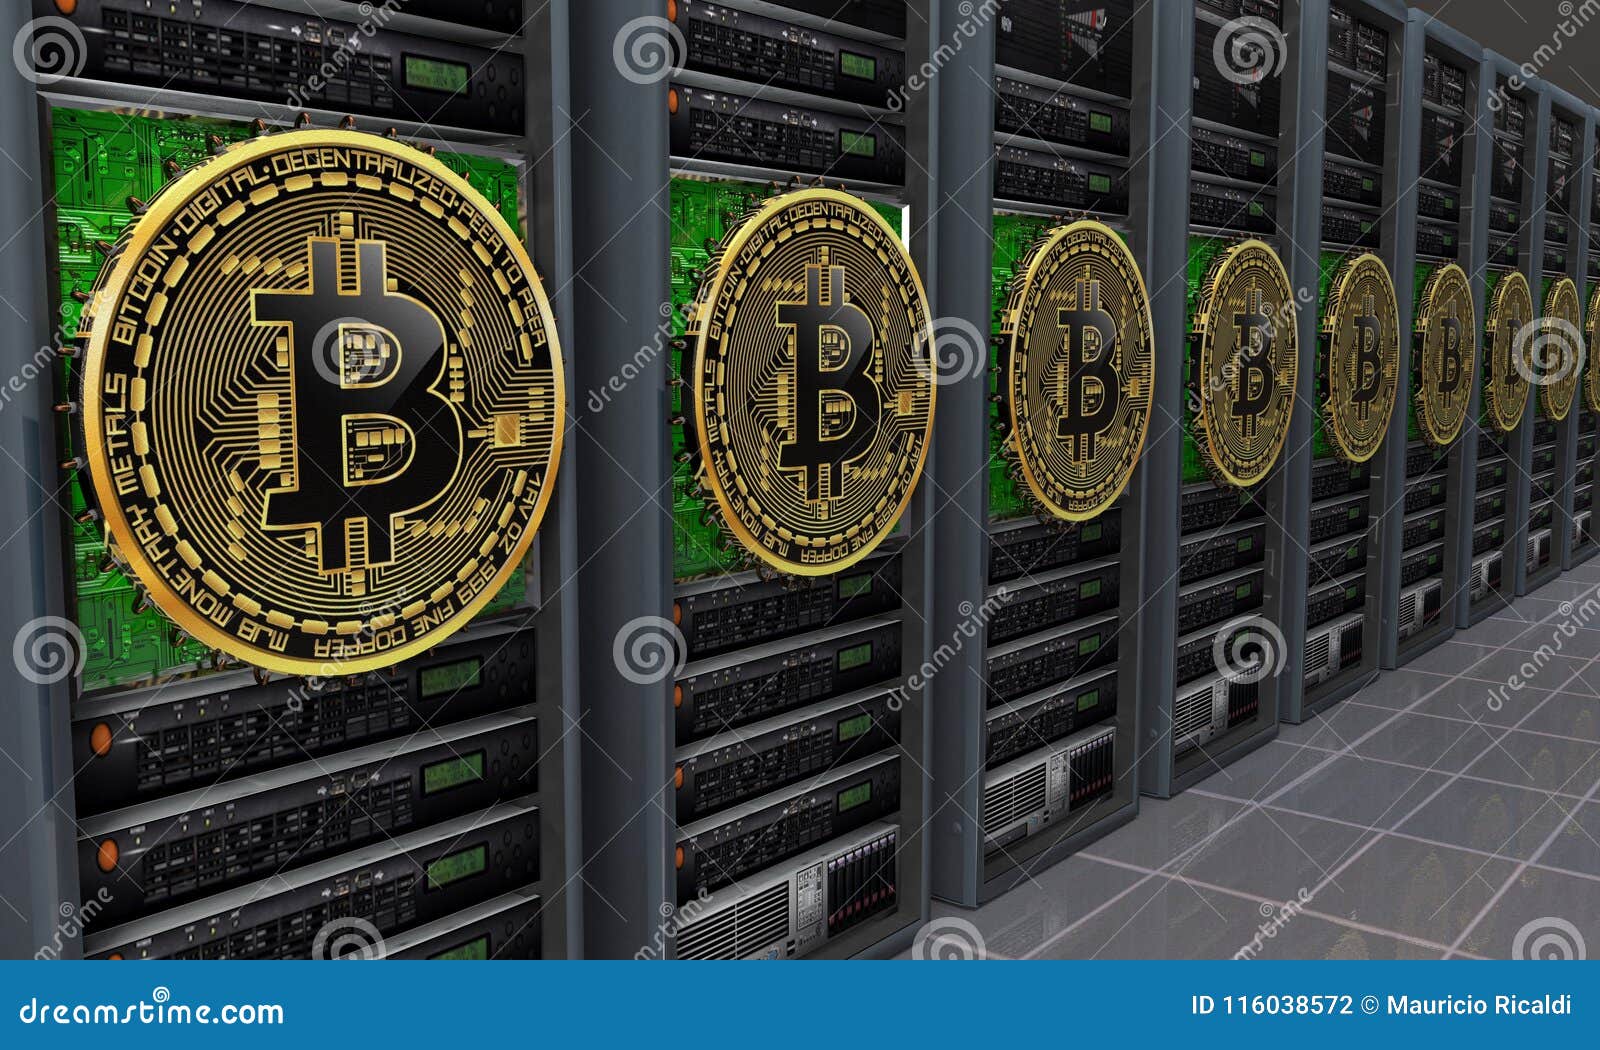 bitcoin server